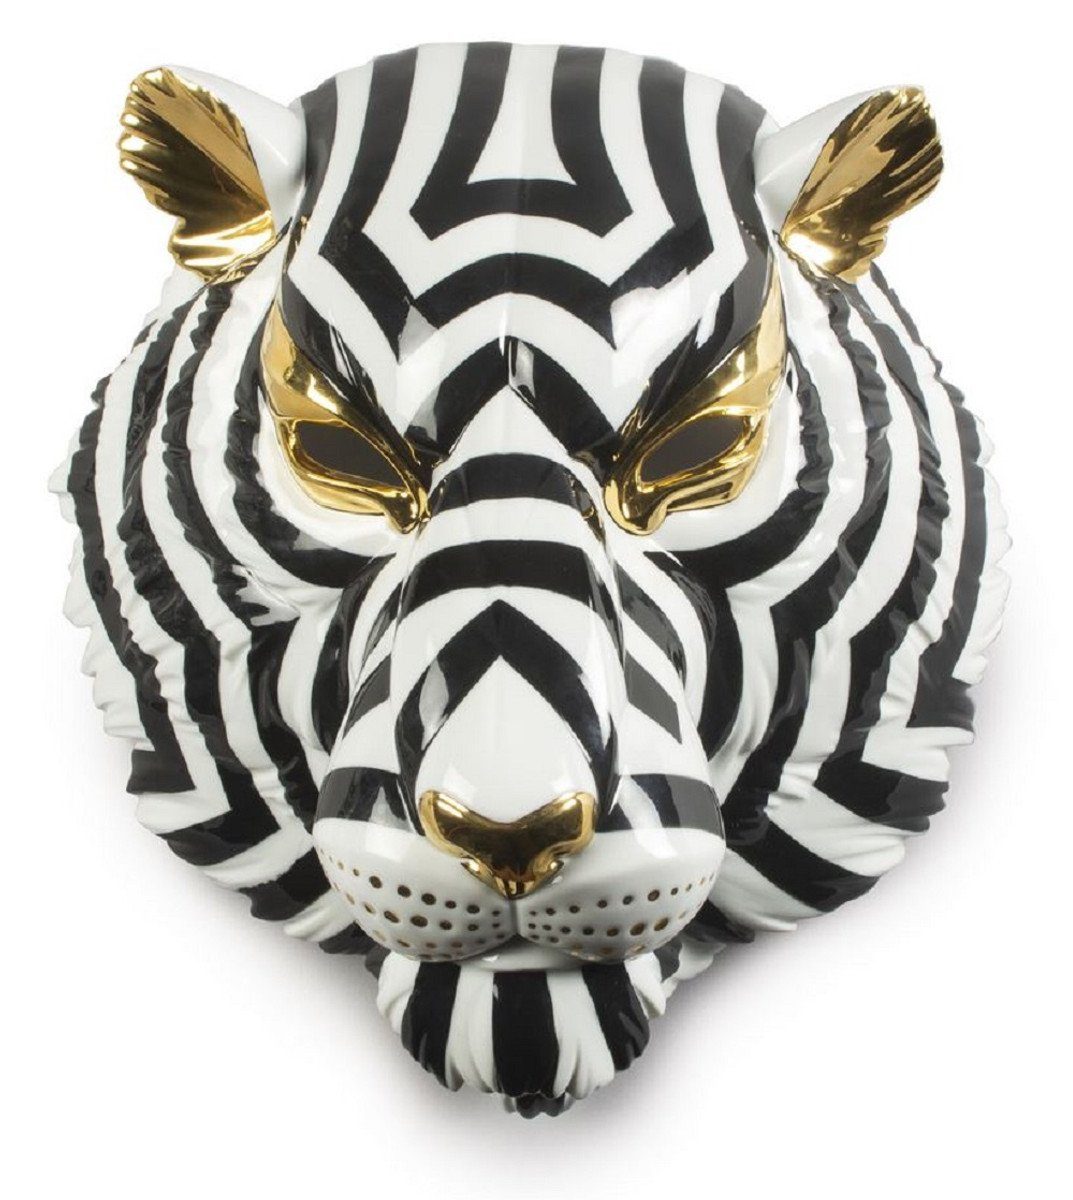 Casa Padrino Dekofigur Casa Padrino Luxus Porzellan Deko Maske Tiger Schwarz / Weiß / Gold 30 x 23 x H. 38 cm - Moderne handgefertigte Wanddeko - Erstklassische Qualität - Made in Spain | Dekofiguren